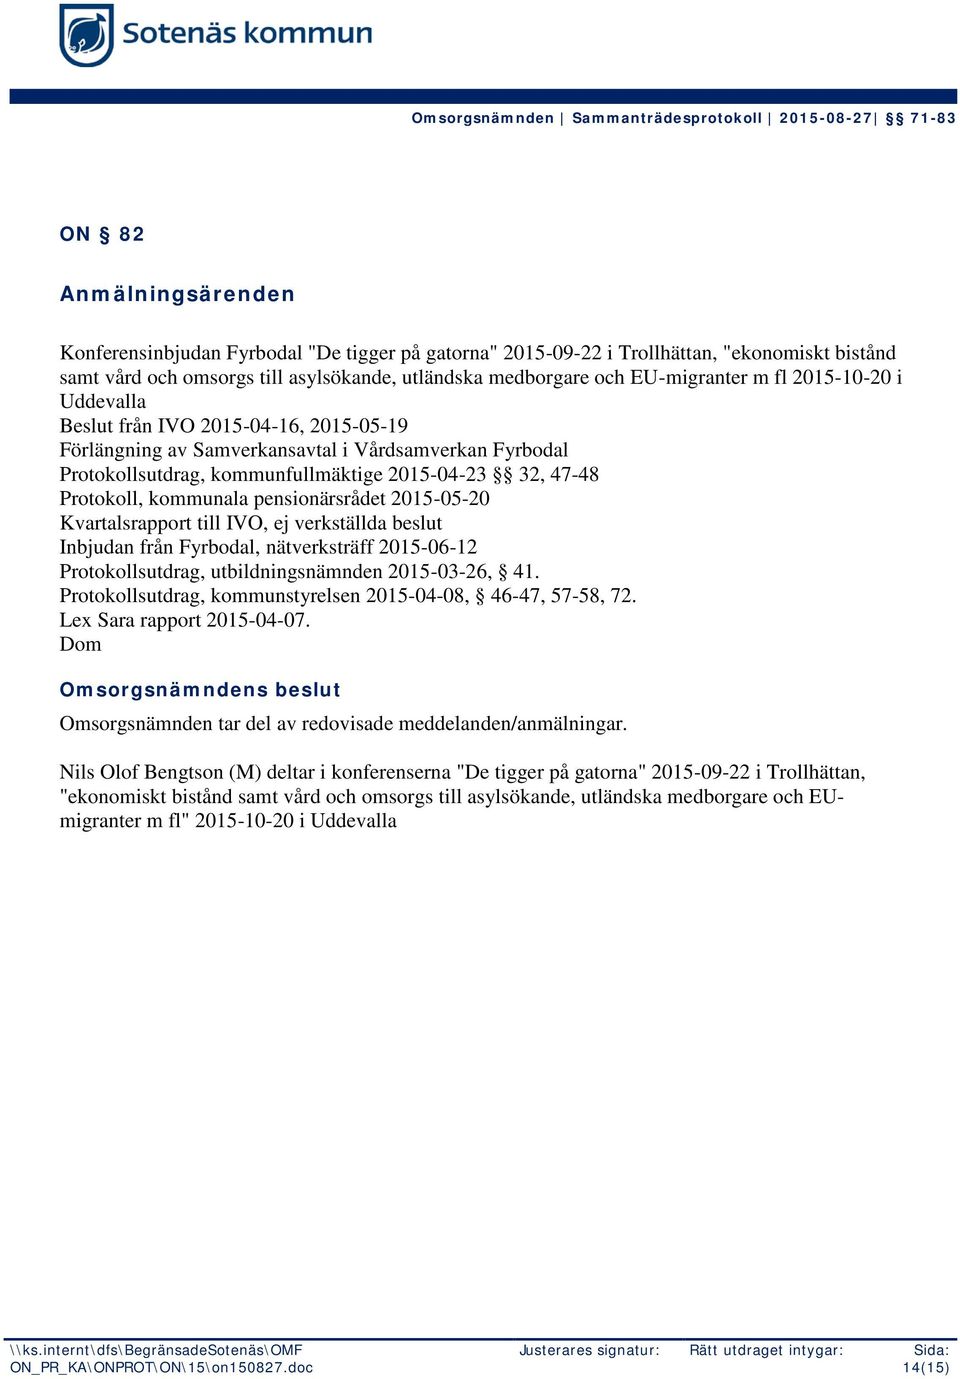 pensionärsrådet 2015-05-20 Kvartalsrapport till IVO, ej verkställda beslut Inbjudan från Fyrbodal, nätverksträff 2015-06-12 Protokollsutdrag, utbildningsnämnden 2015-03-26, 41.